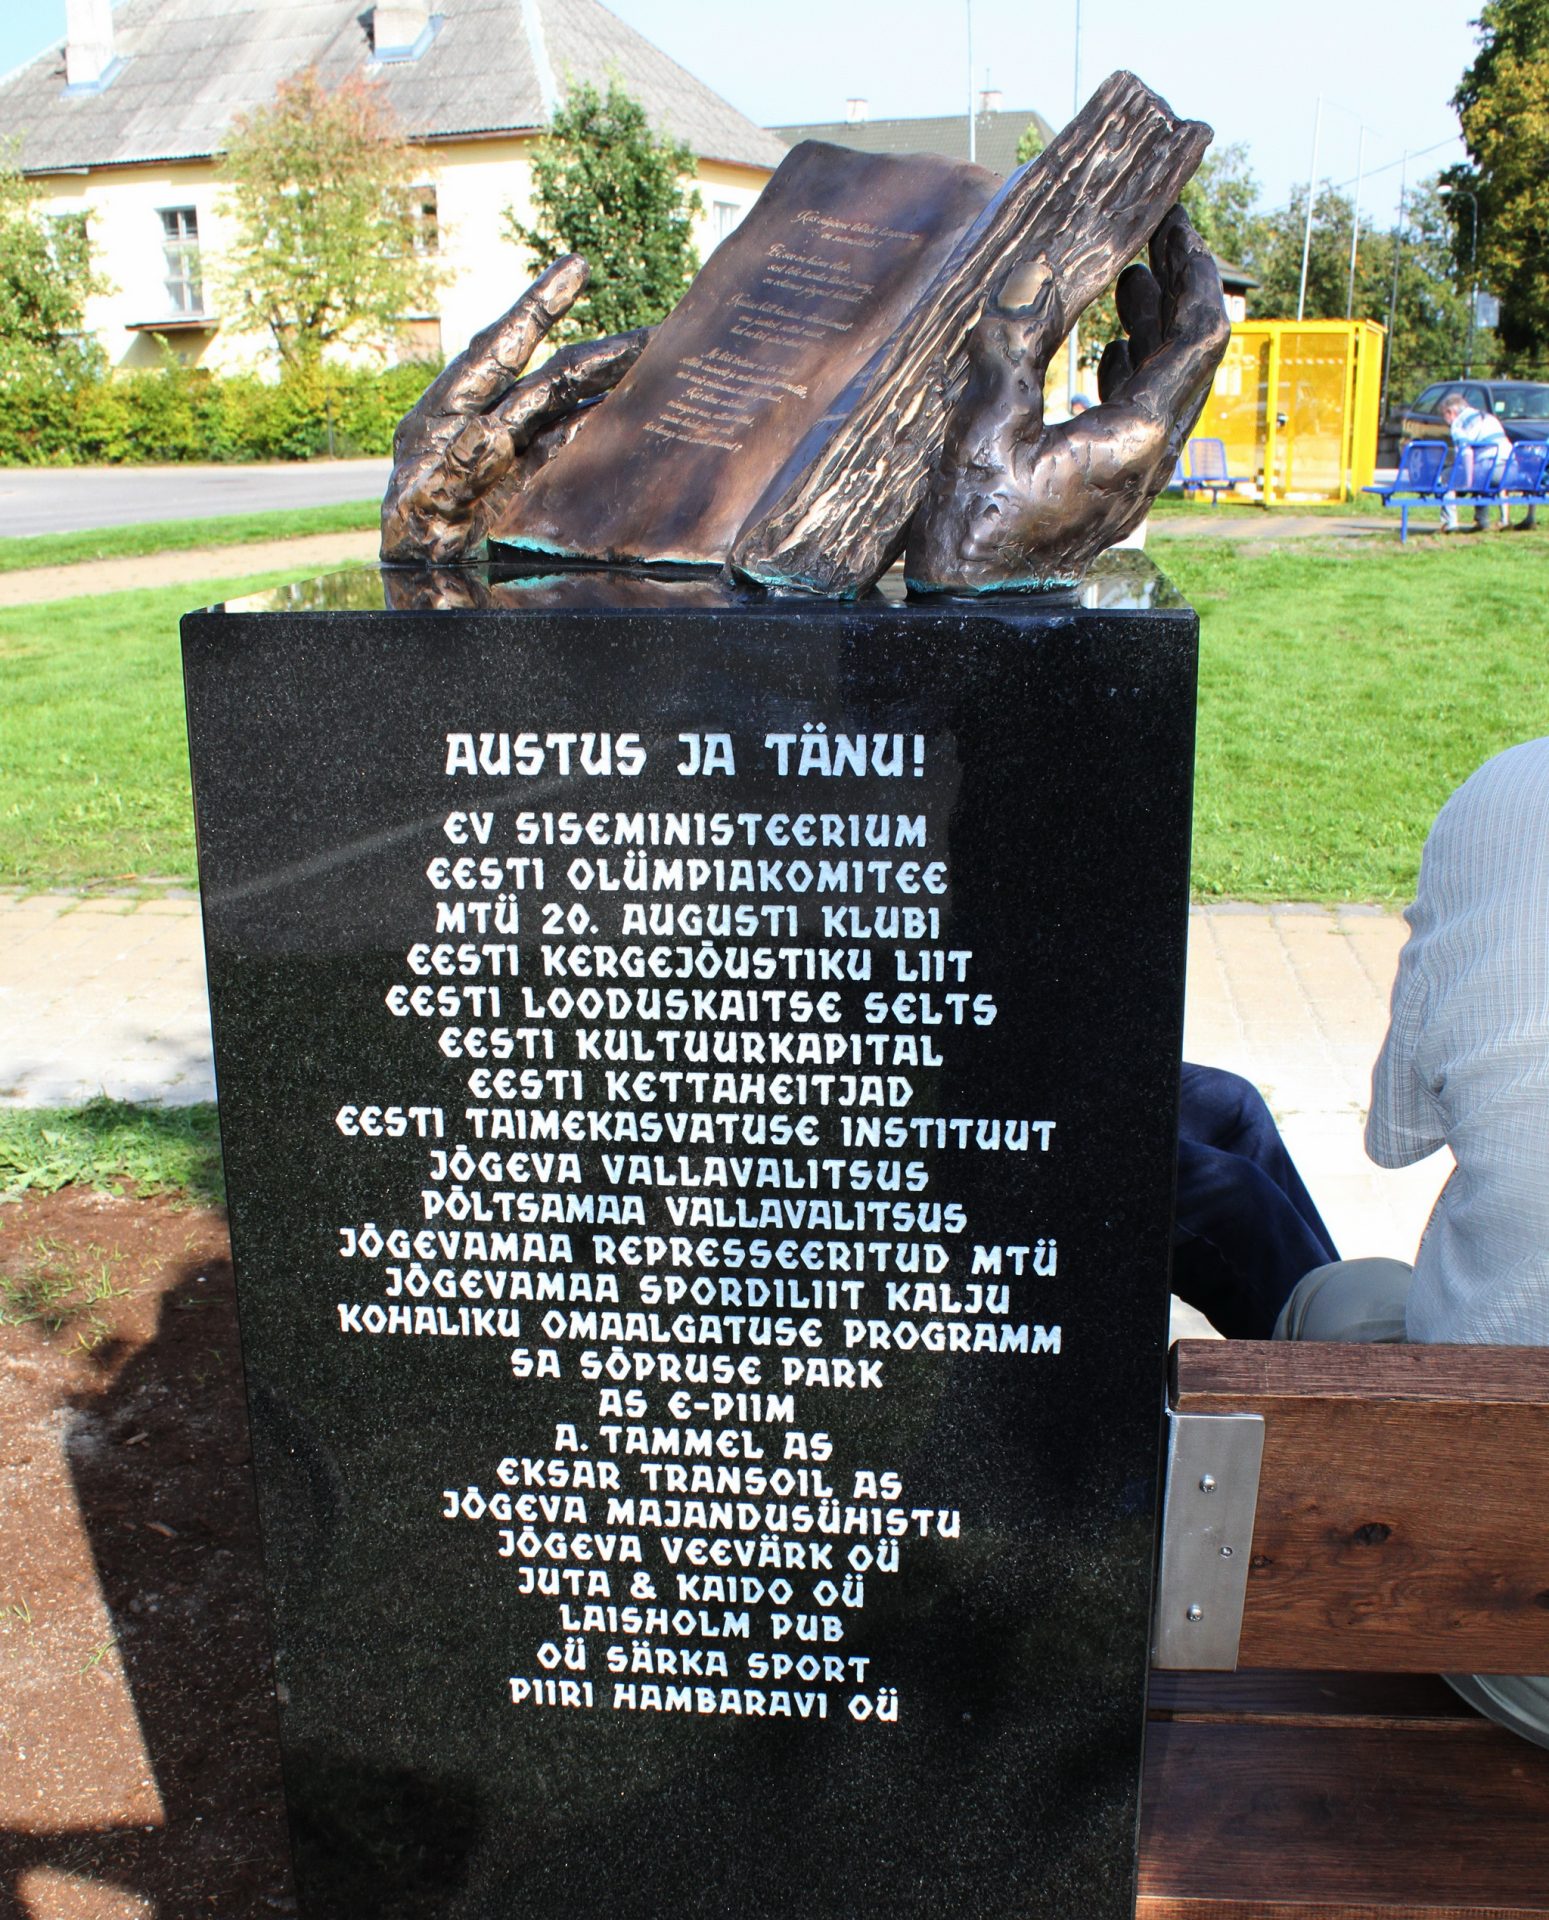 В 2018 году в парке «Сыпрузе» в Йыгева в память об Антсе Паю был открыт мемориальная скамейка скульптора Тауно Кангро — это была инициатива членов Йыгеваского клуба львов — Антс Паю был основателем этого клуба и до конца своих дней был его президентом.